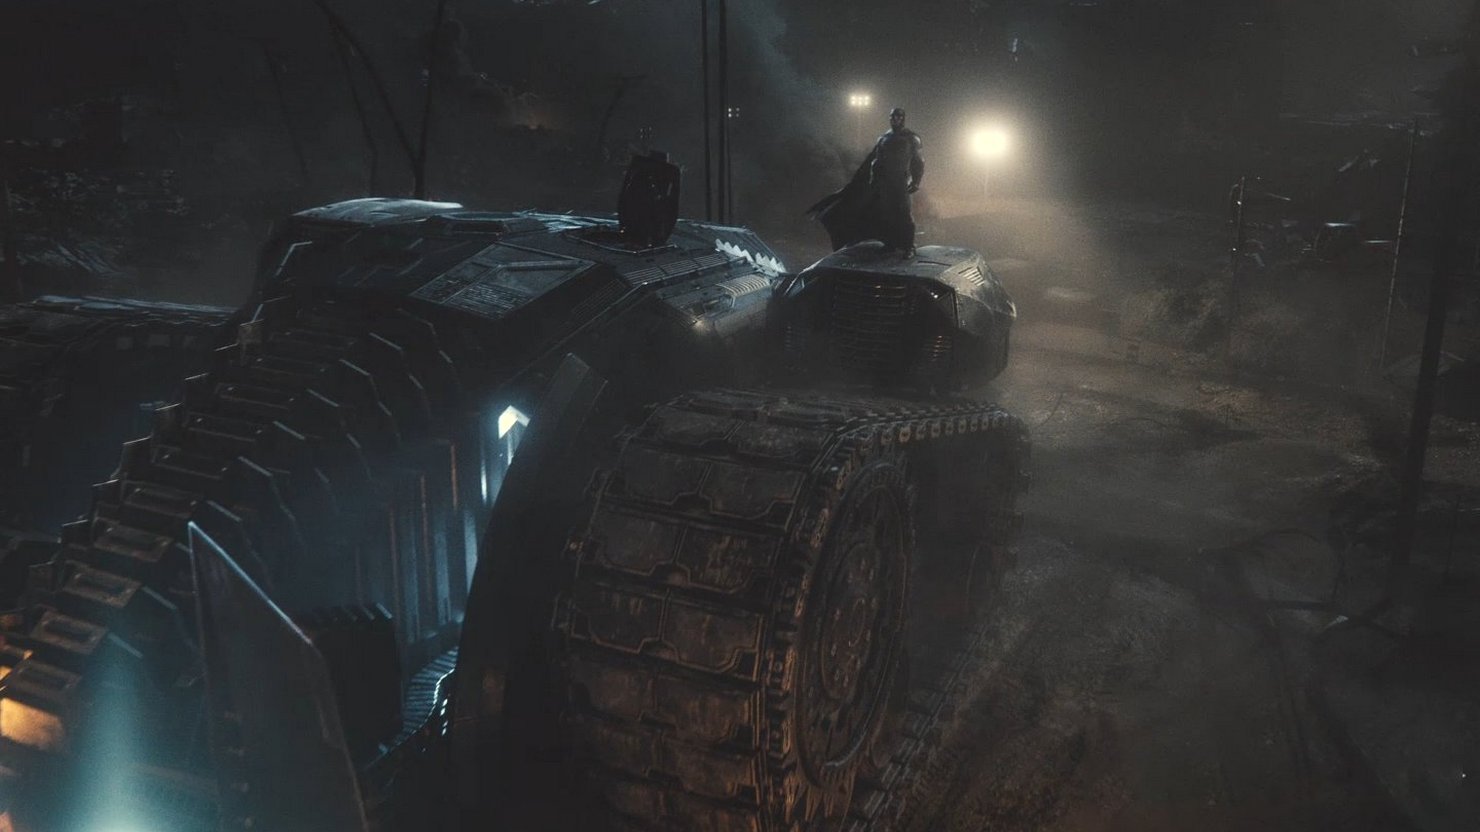 Бэтмен на танке и Чудо-женщина против Степпенвулфа в эпичном тизере "Лиги справедливости" Зака Снайдера